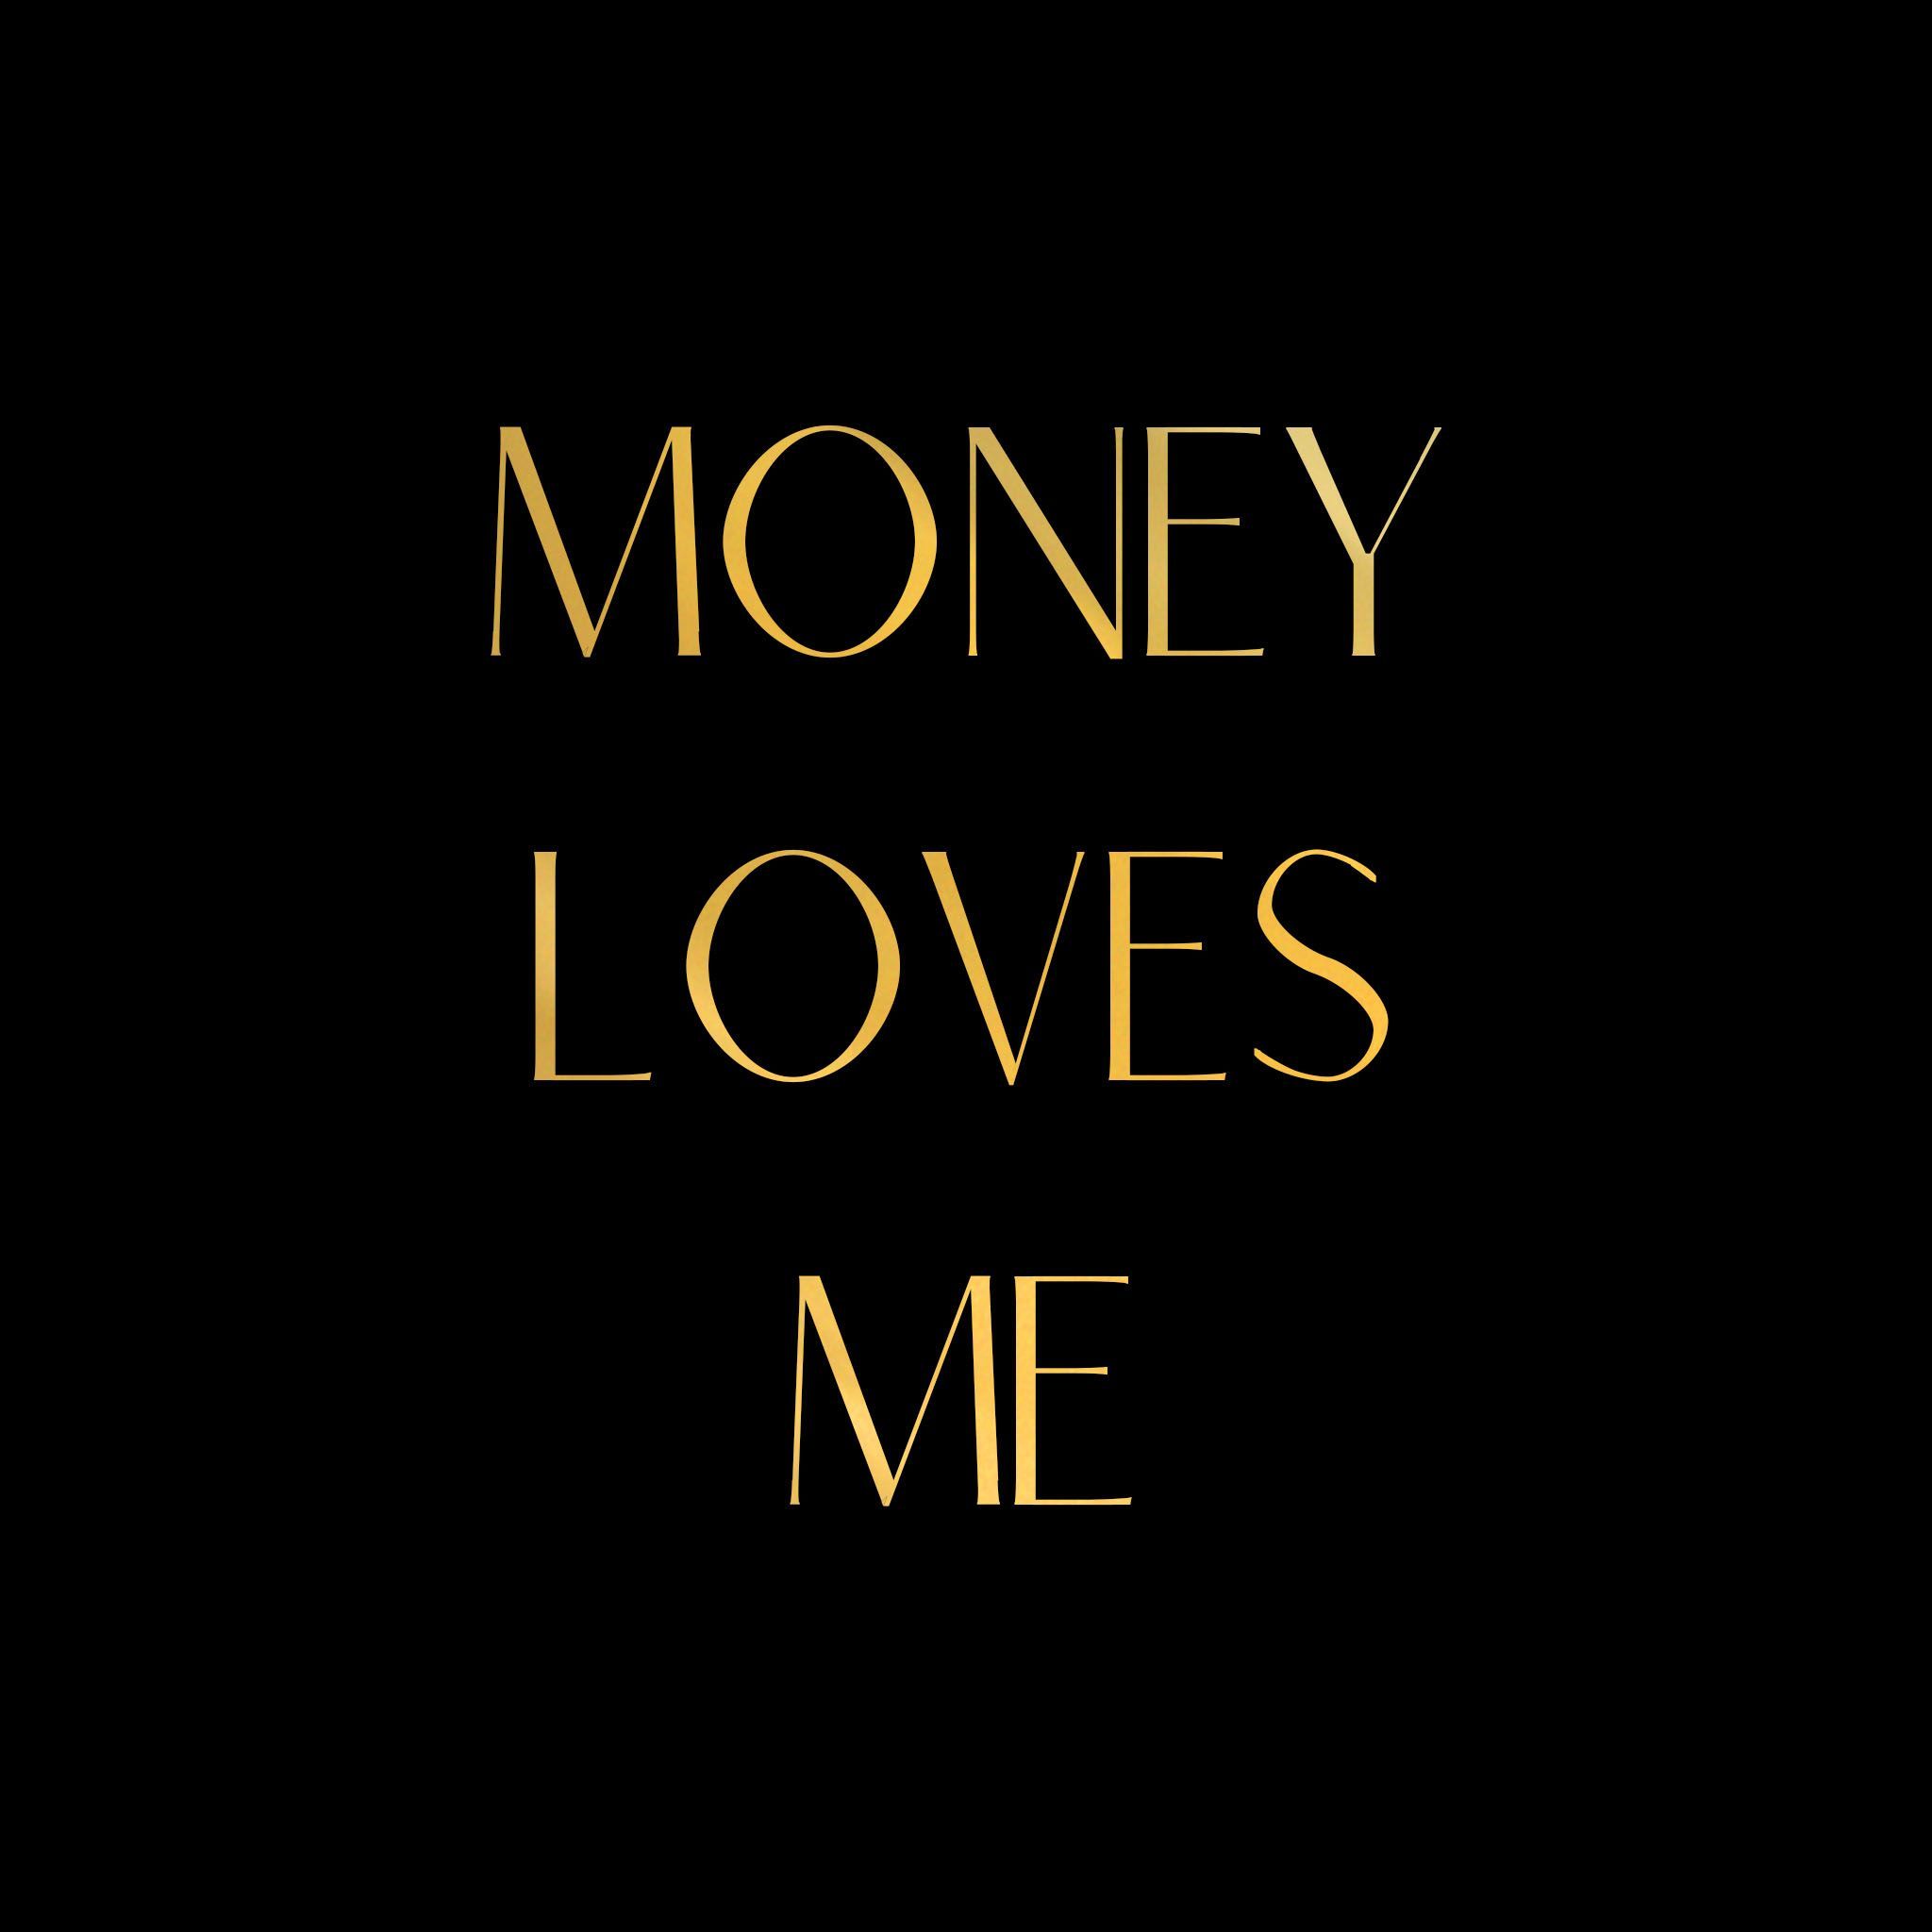 Money Loves Me 8x8 Gold Foil Print - Money Loves Me 8x8 Gold Foil Print -   17 beauty Images inspirational ideas